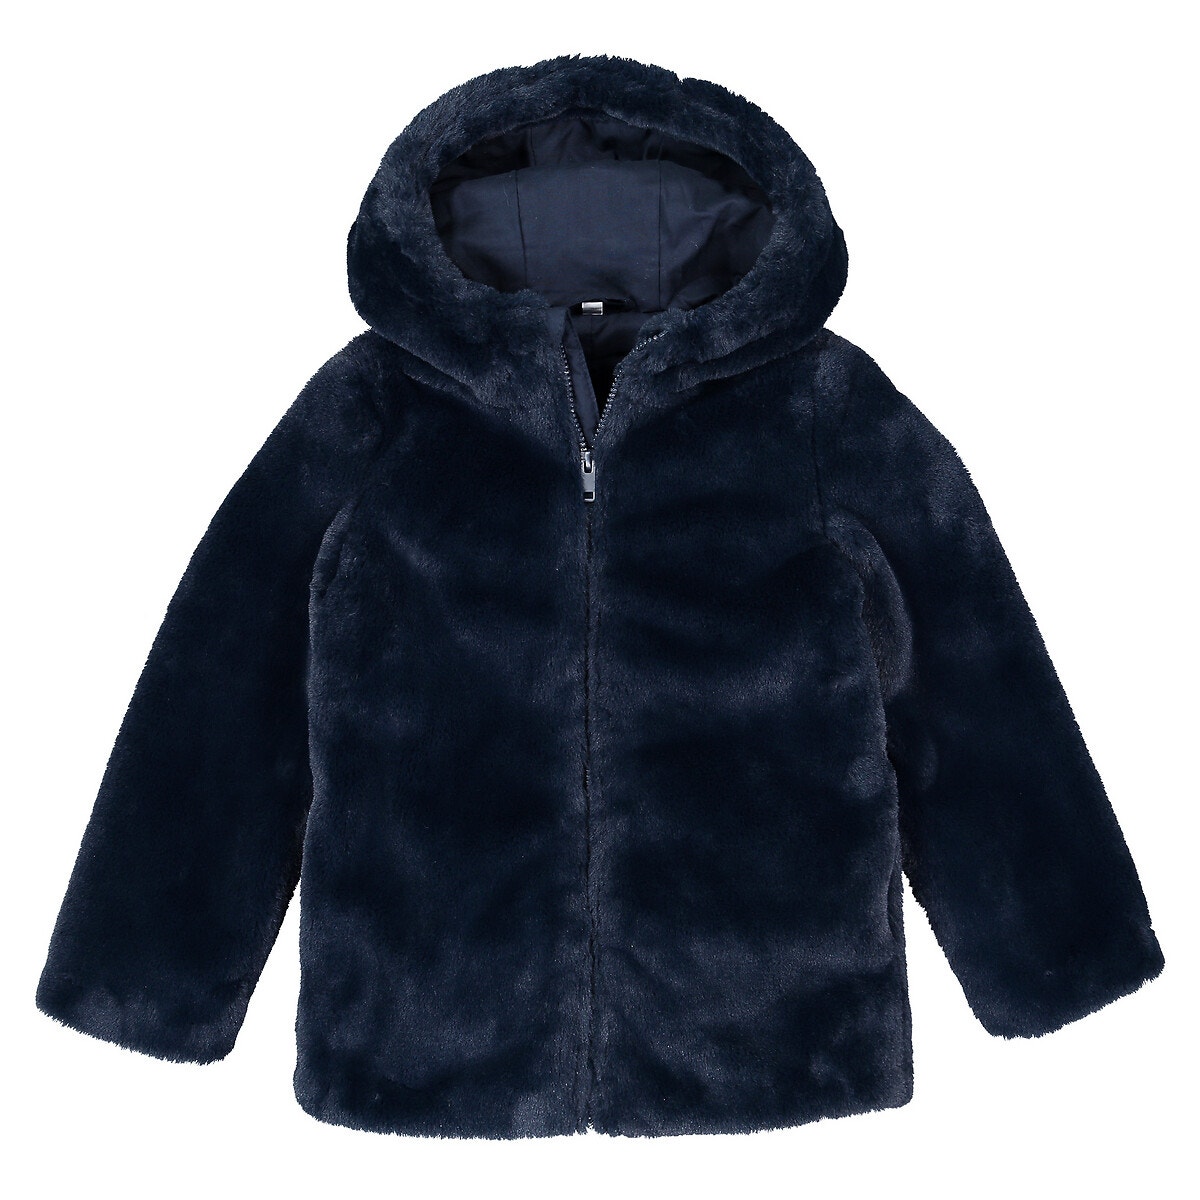 Παλτό με κουκούλα από συνθετική γούνα, 3-12 ετών